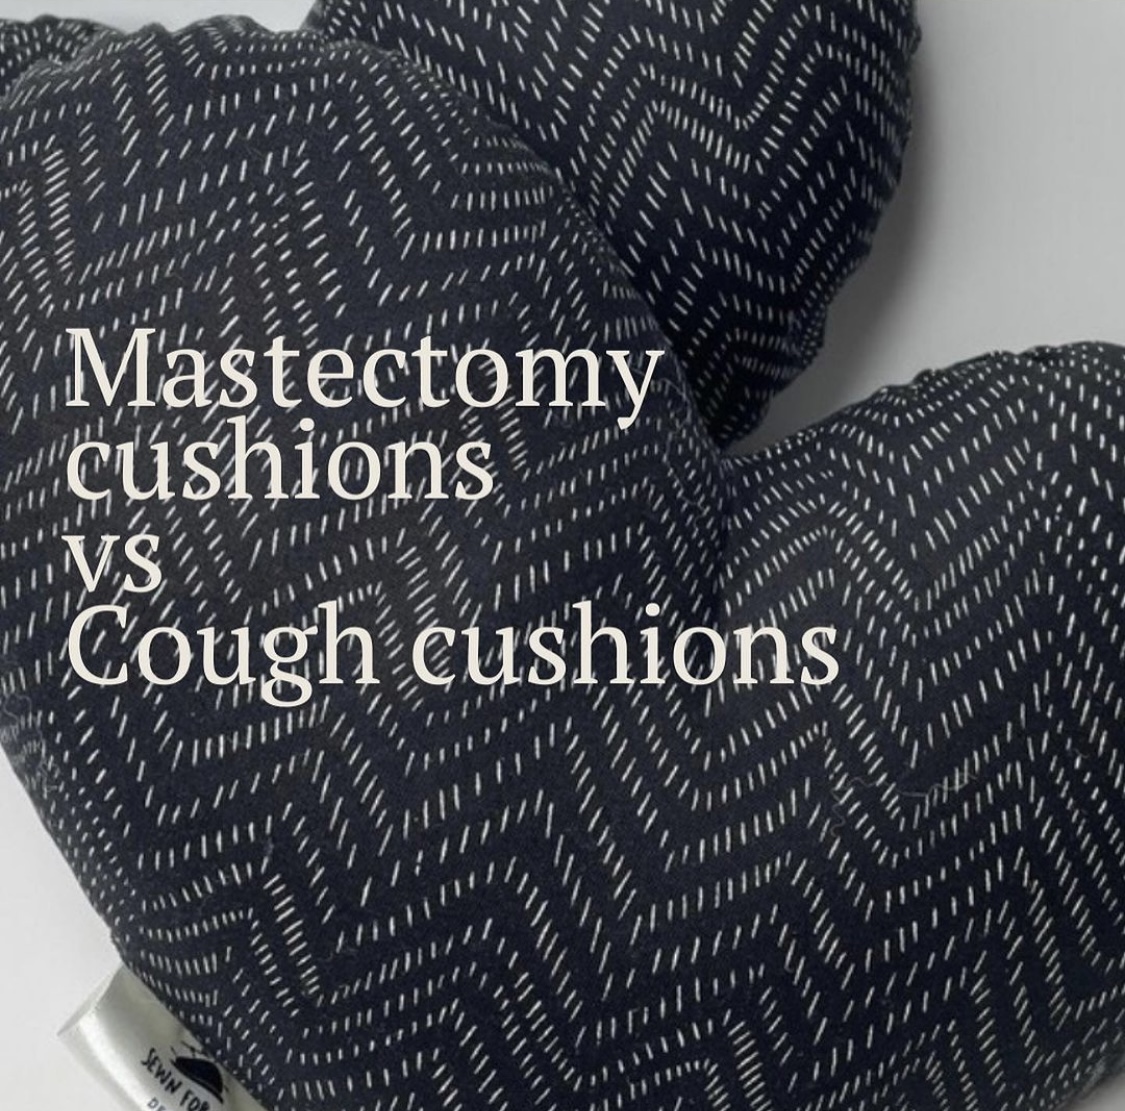 Mastectomy cushions vs Cough cushions